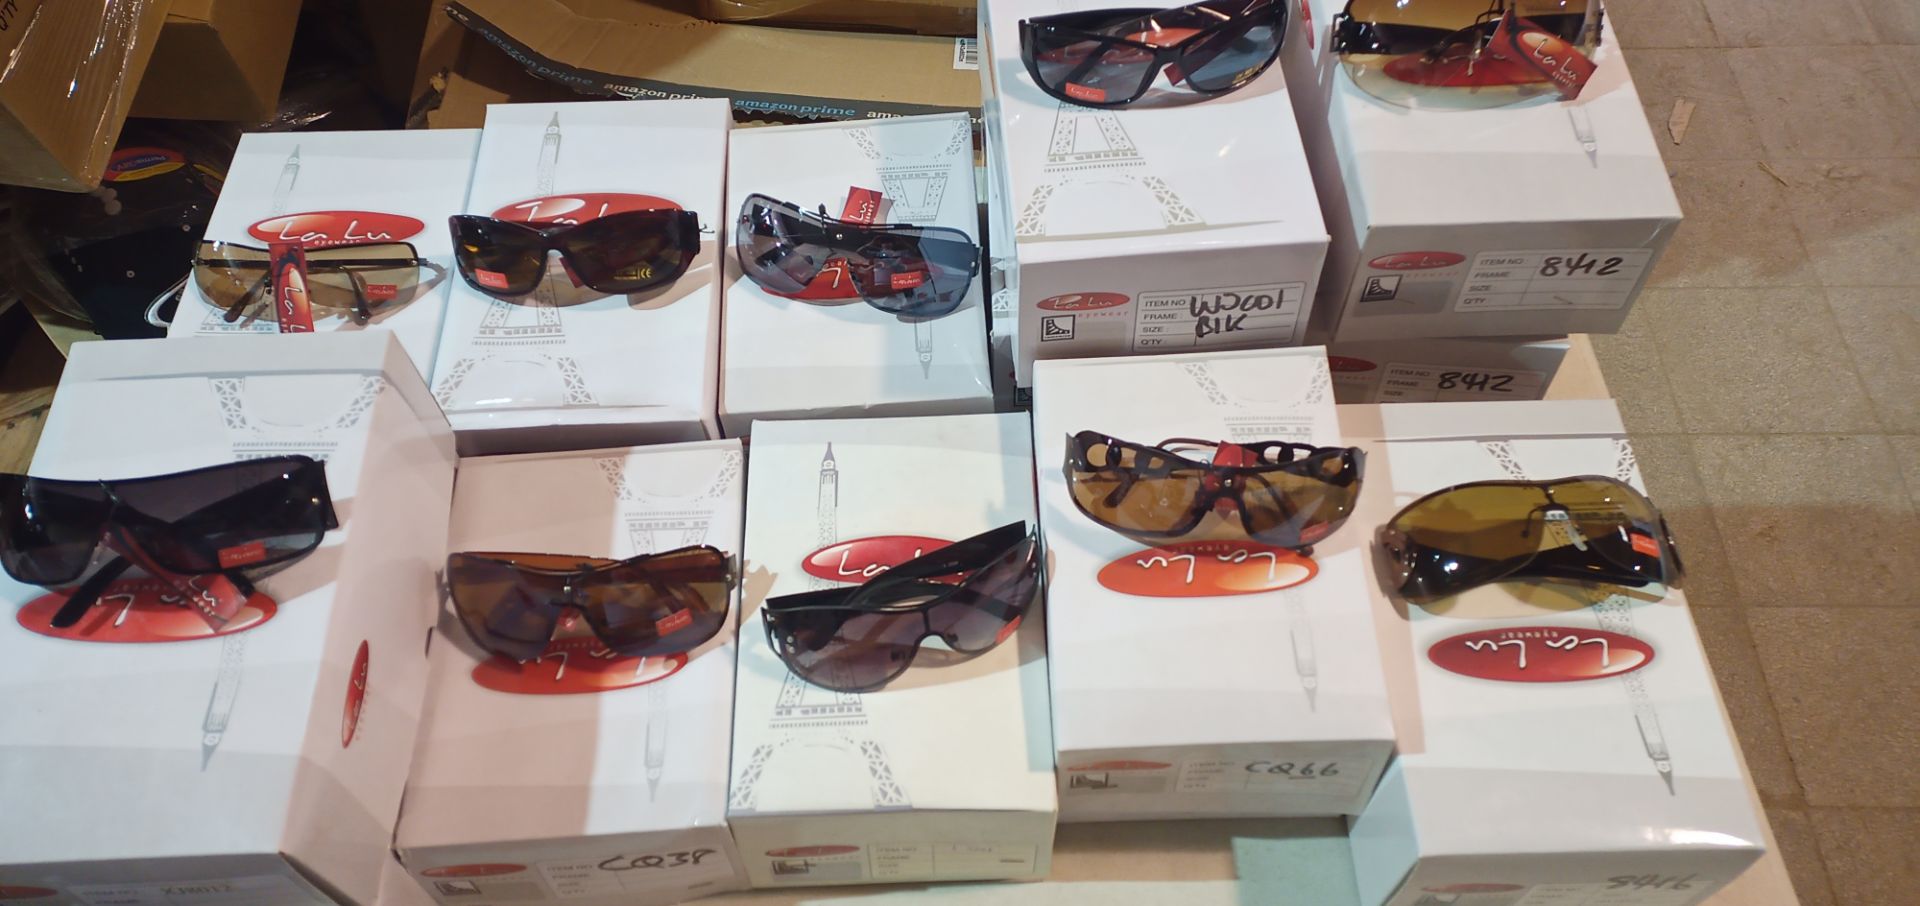 500x La Lu Branded Sunglasses | Various Styles | Unopened & Unused - Image 33 of 33